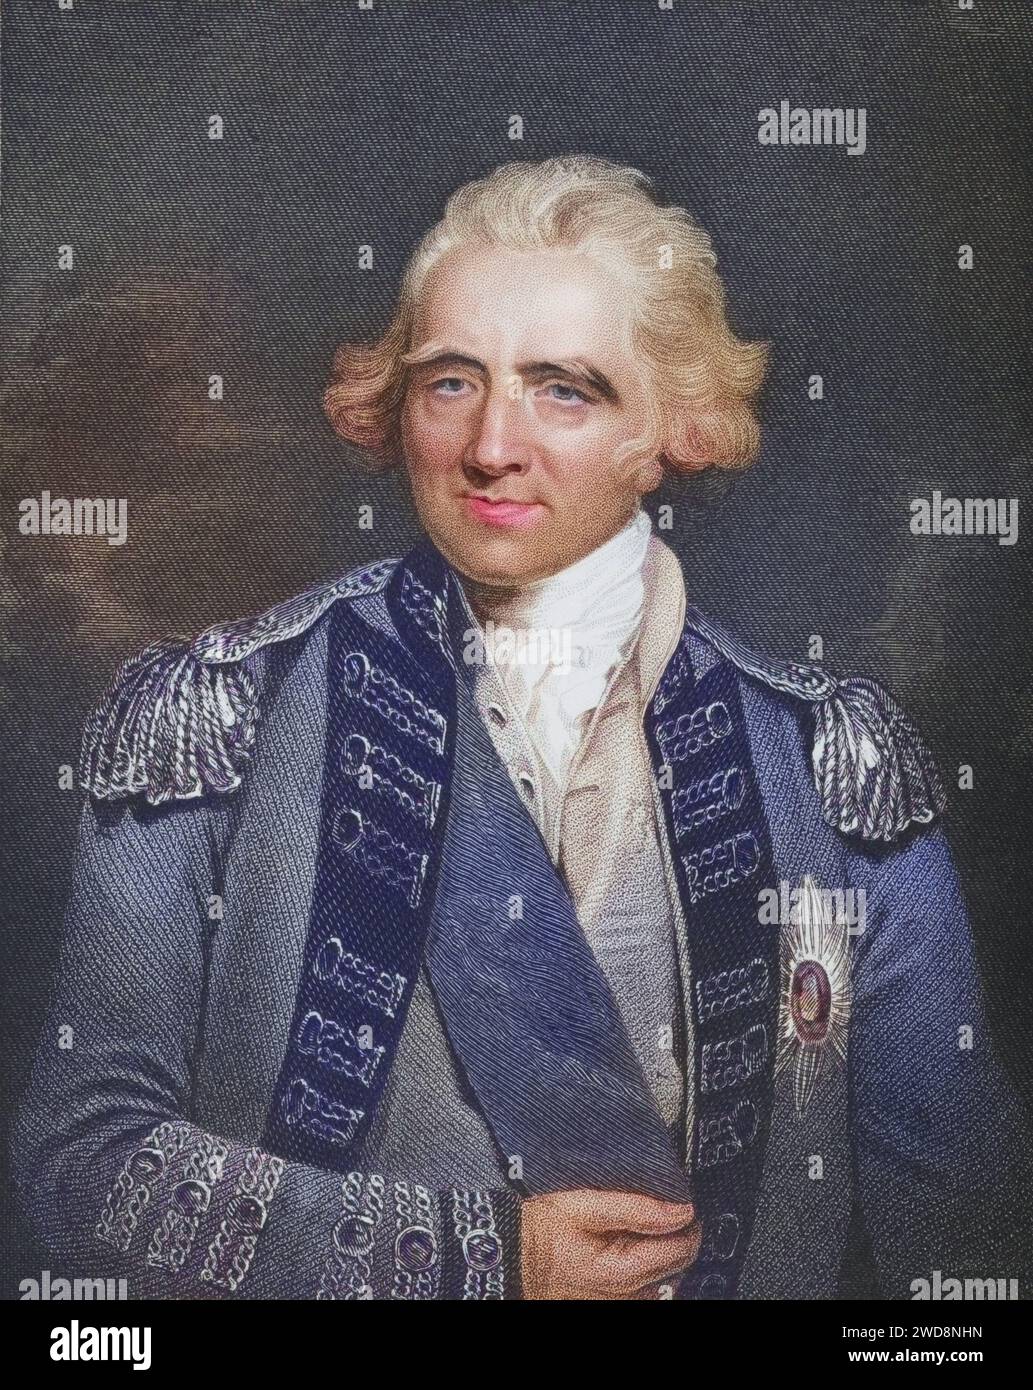 Sir Ralph Abercromby, 1734-1801. Britischer General, Historisch, digital restaurierte Reproduktion von einer Vorlage aus dem 19. Jahrhundert, Record date not stated Stock Photo